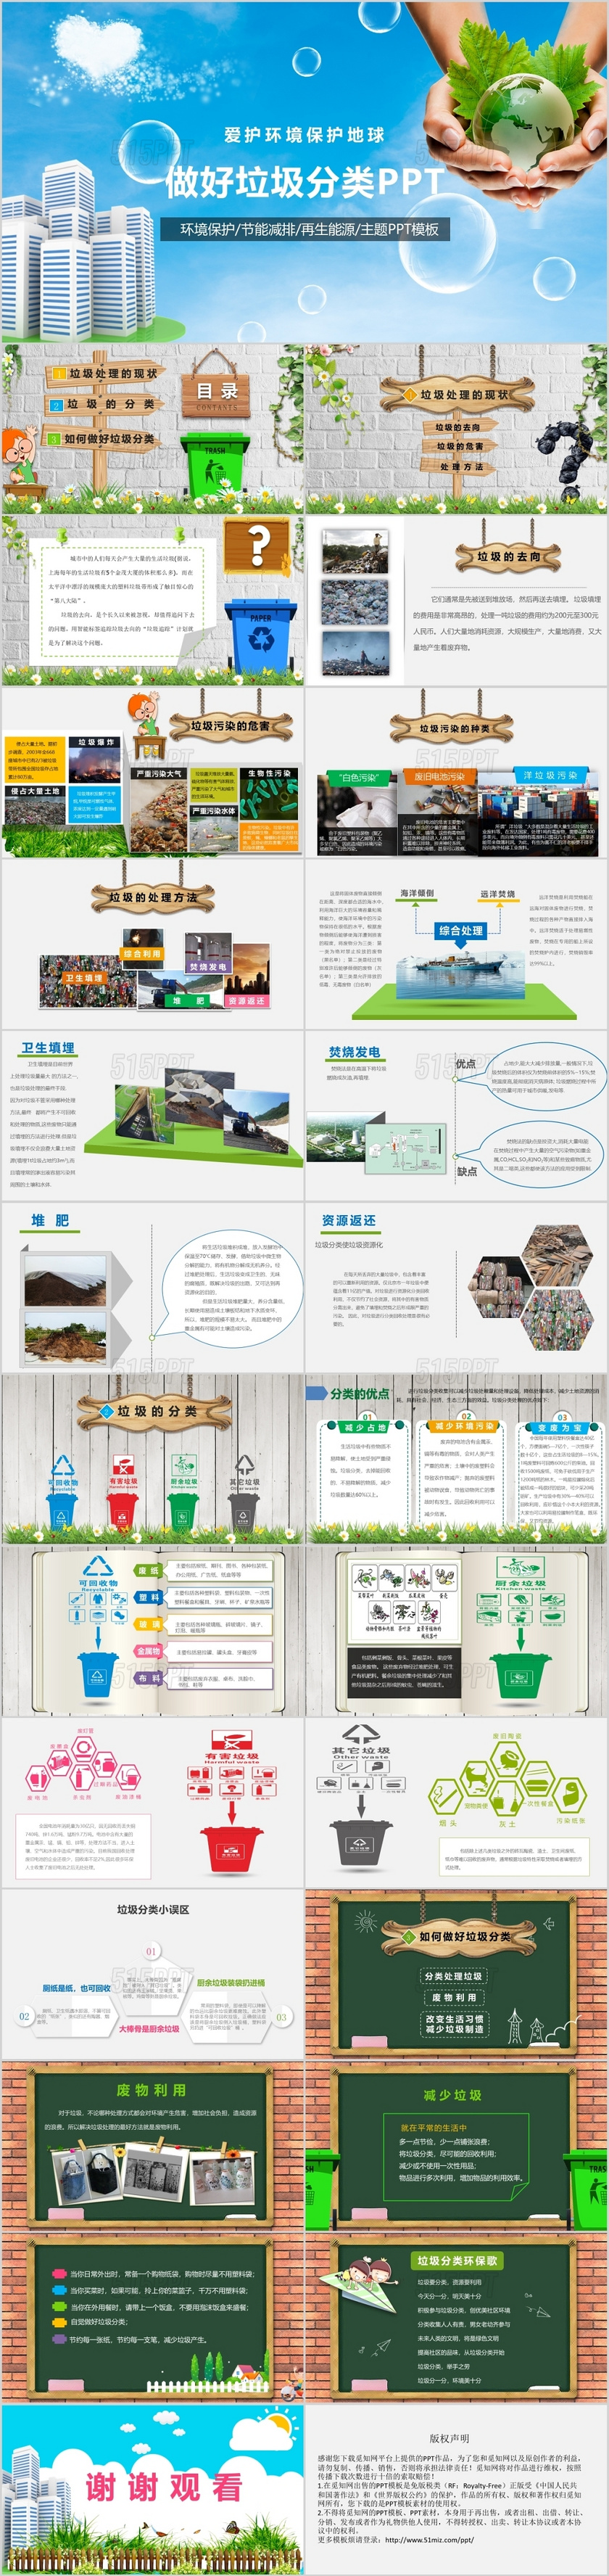 爱护环境保护地球环保垃圾分类PPT模板